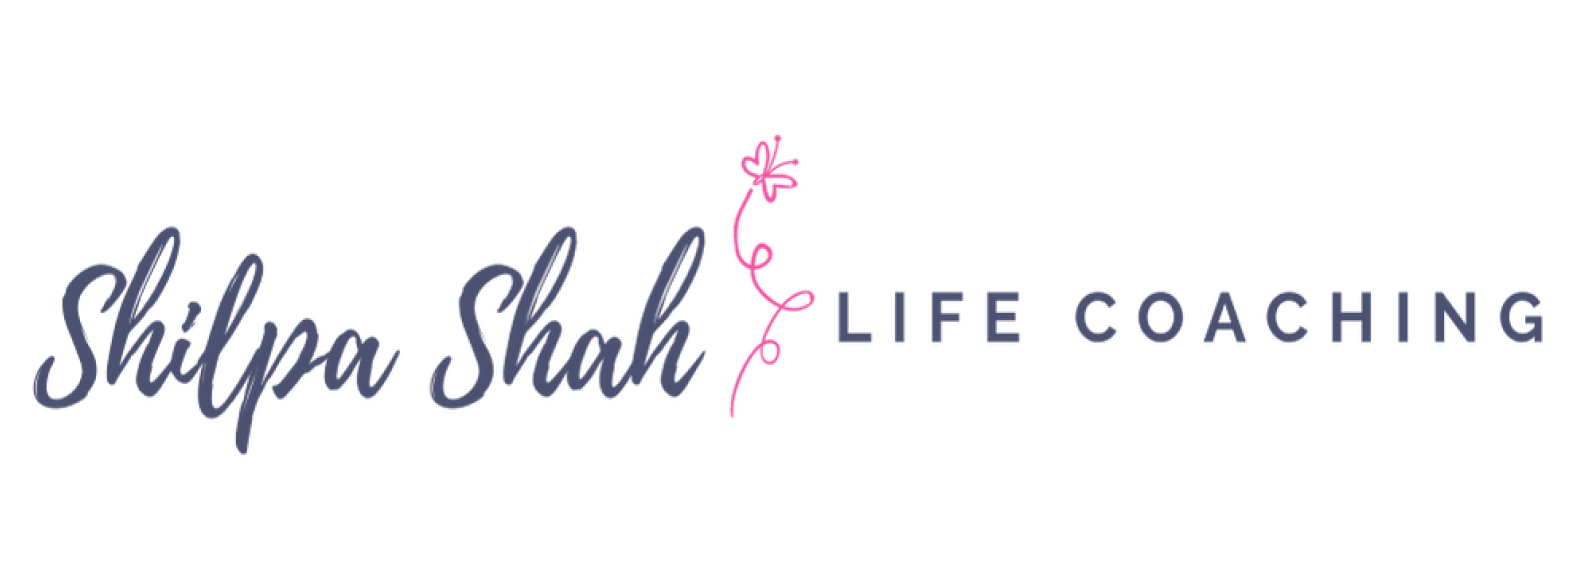 logo Shilpa Shah Life Coaching